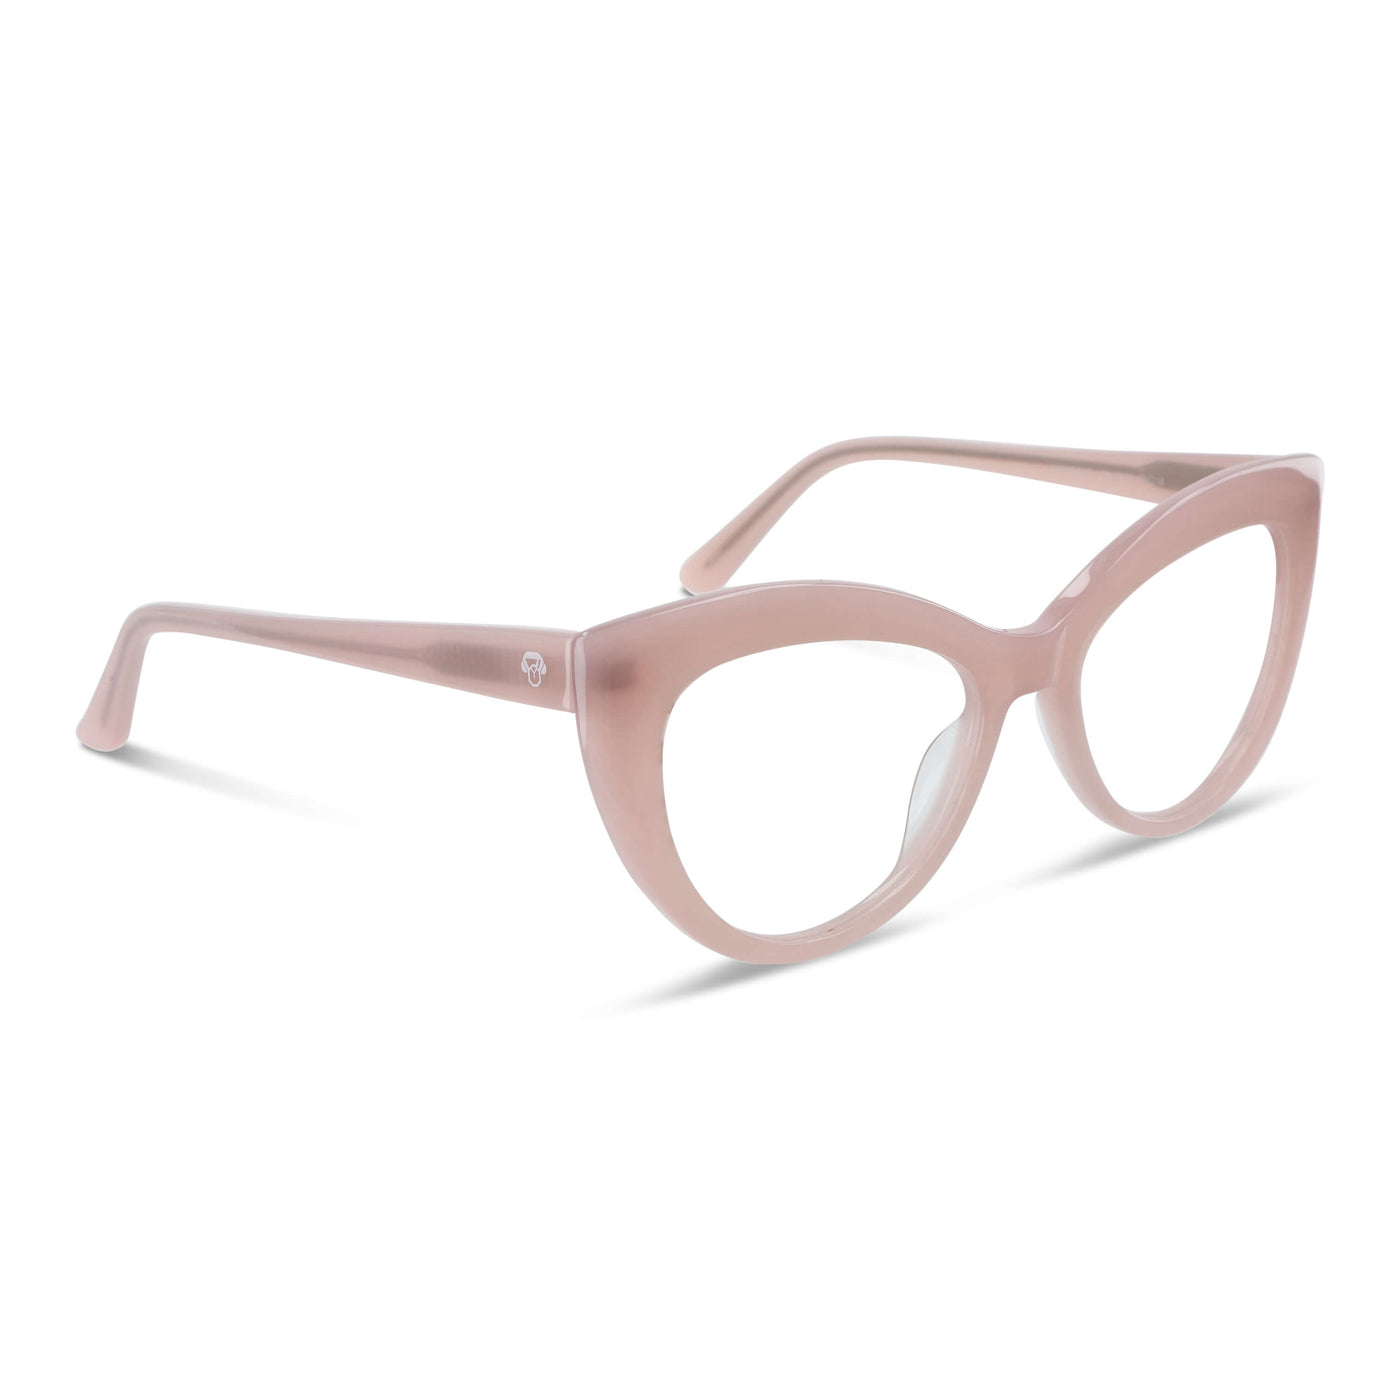  anteojos lentes agatados mujer cara redonda grande receta distribuidor mayorista opticas sustentable multifocales rosado.jpg